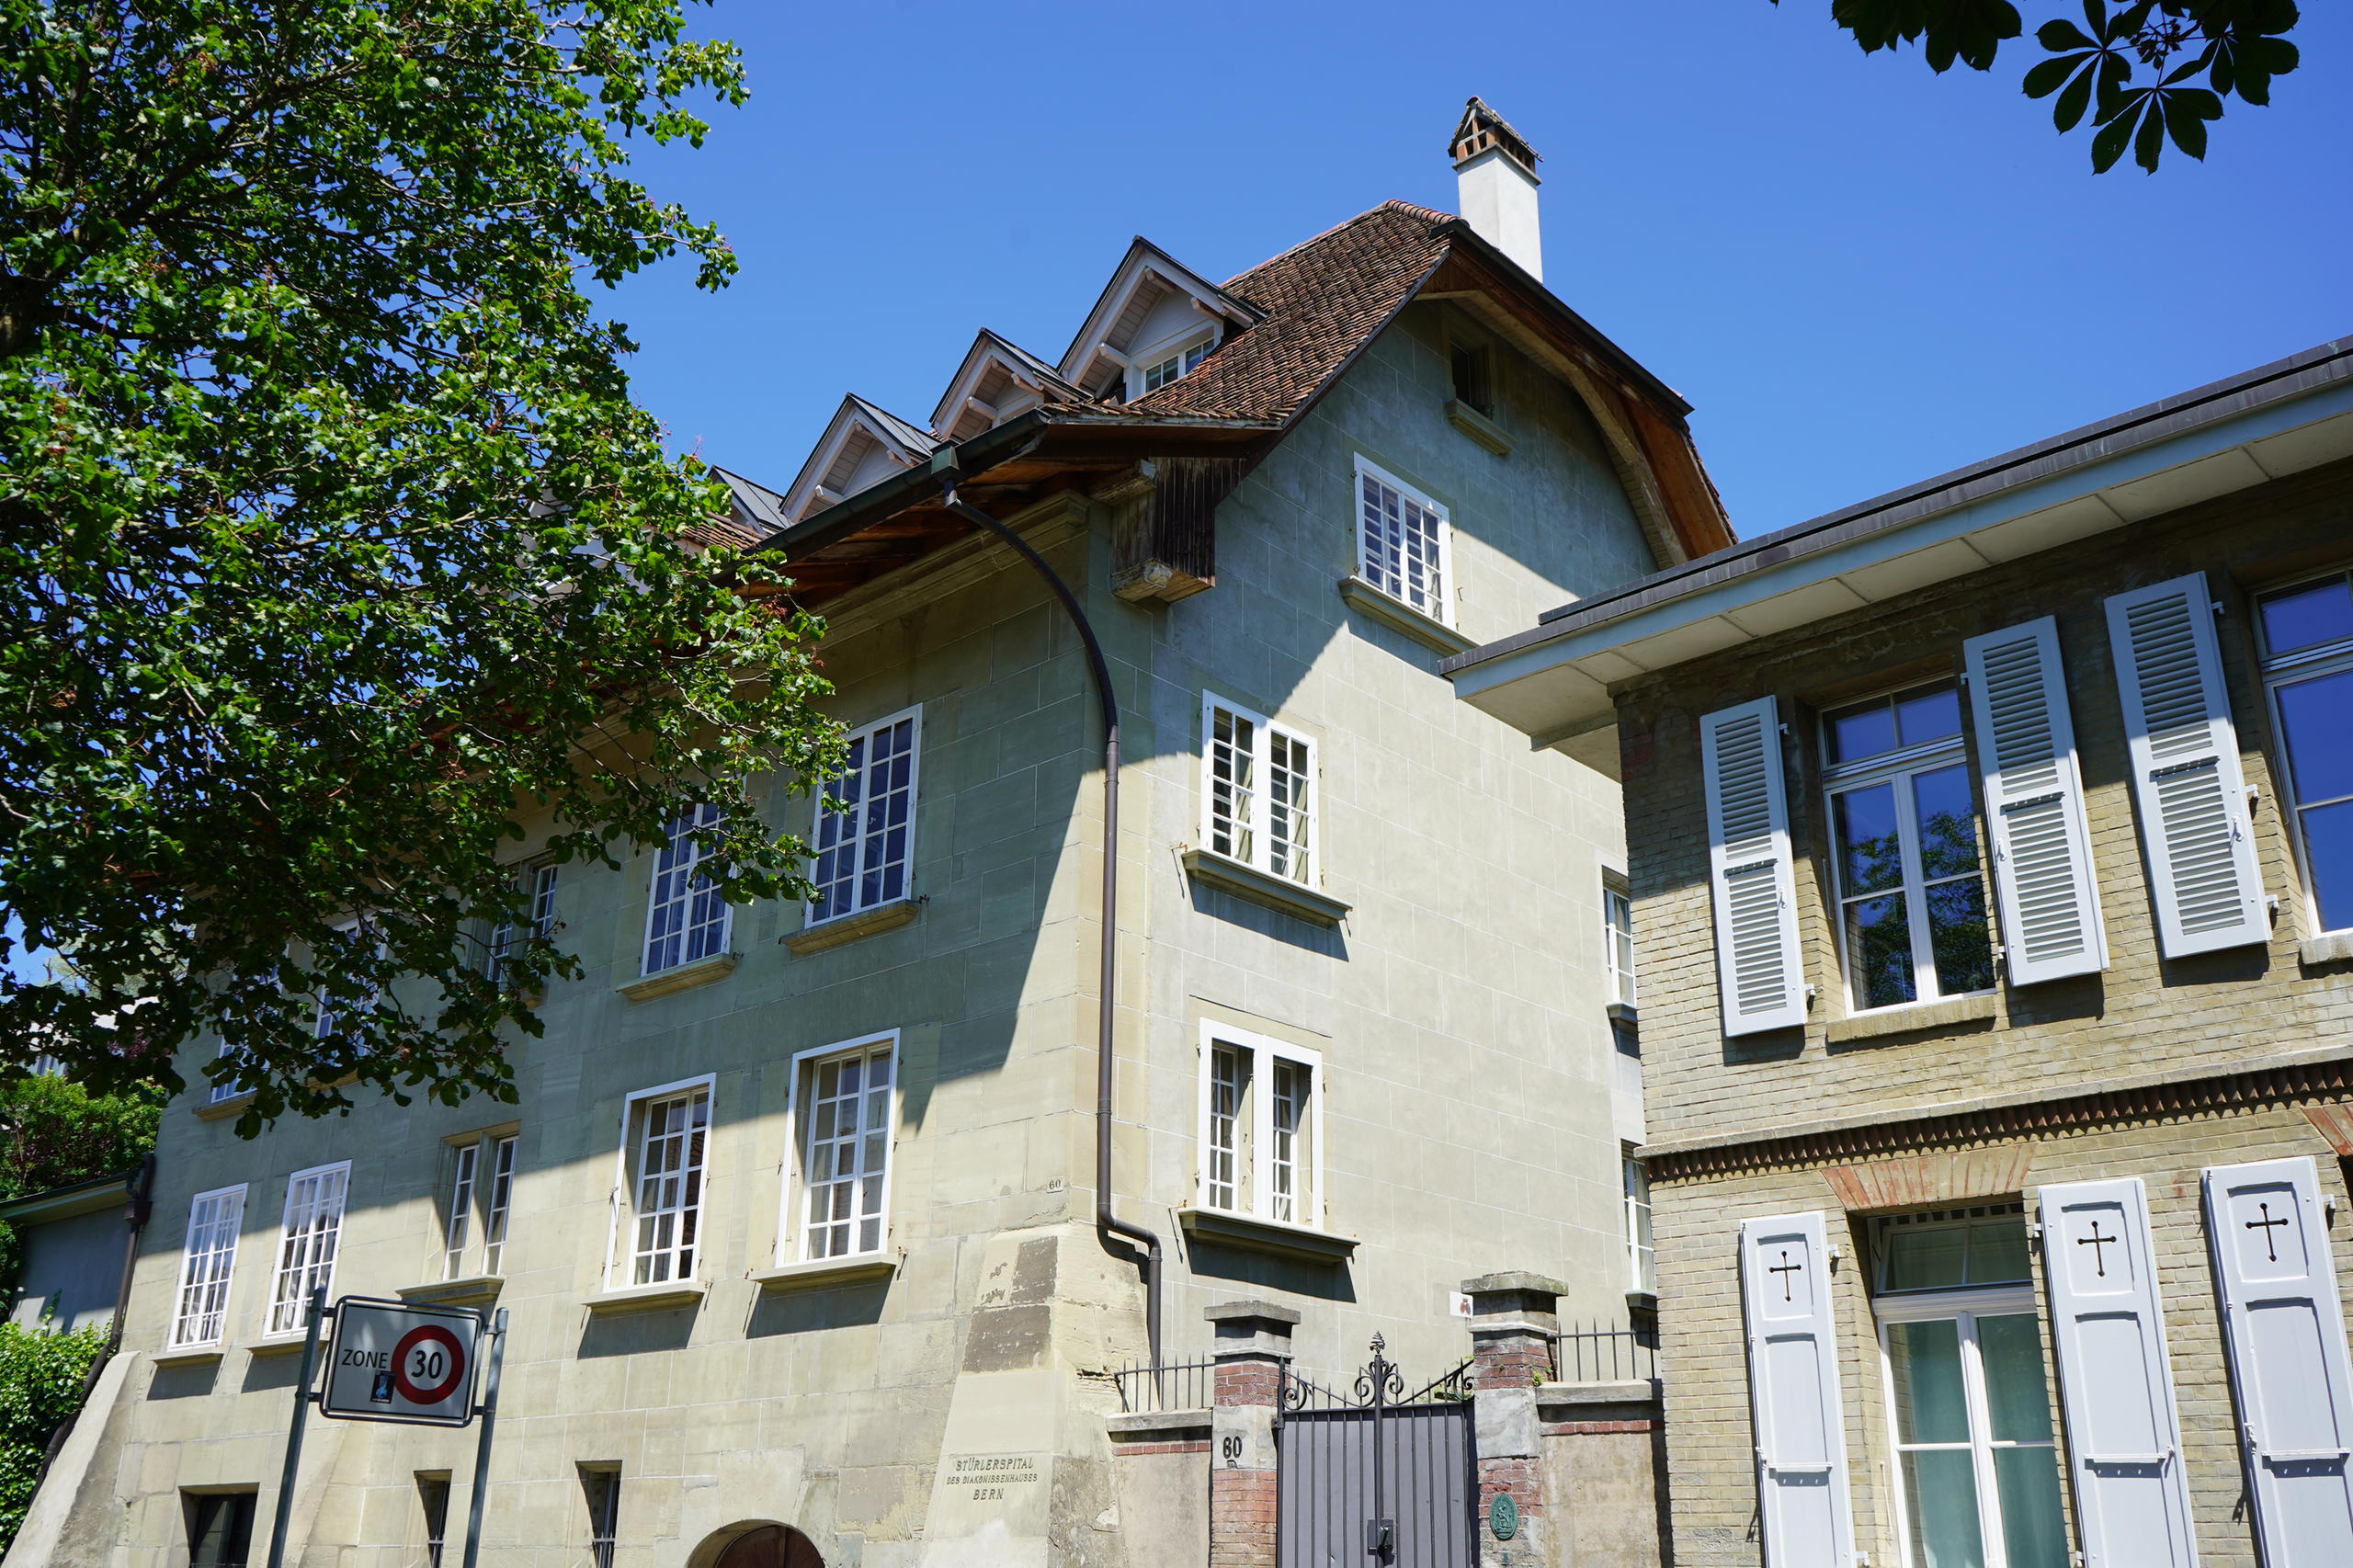 ベルンのシュテュラーハウスでは、10人が独立した7軒の居住空間に暮らす。共有空間もある。プライバシーと一体感が共存するこの共同住宅は、スイスの高齢者向け住宅として重要視されている